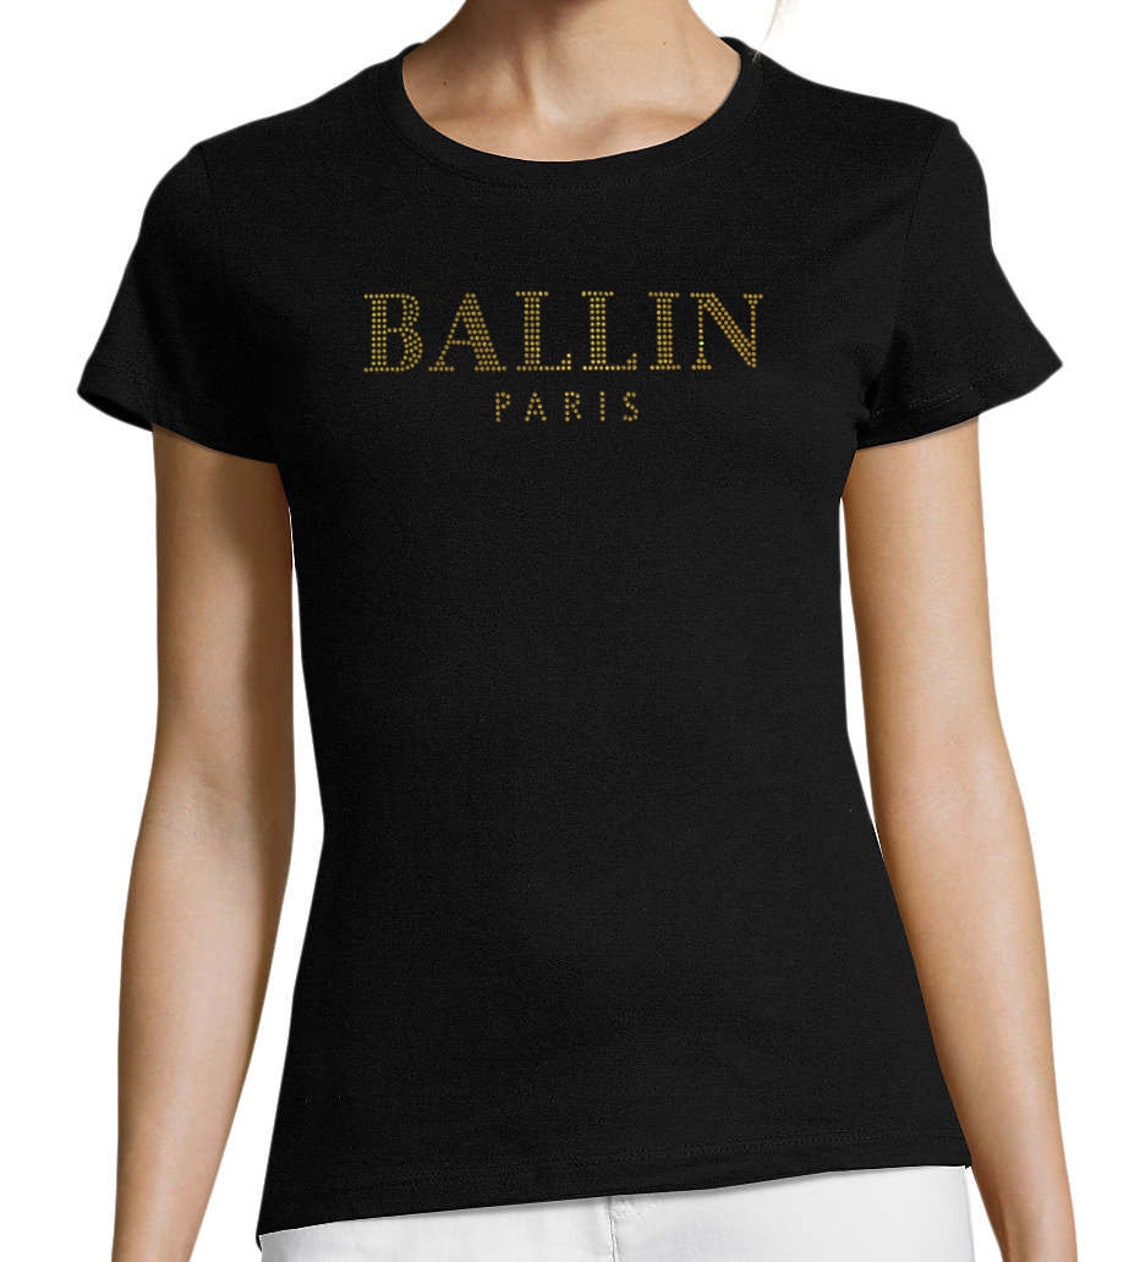 Ballin Paris Rhinestone T-shirt | Etsy